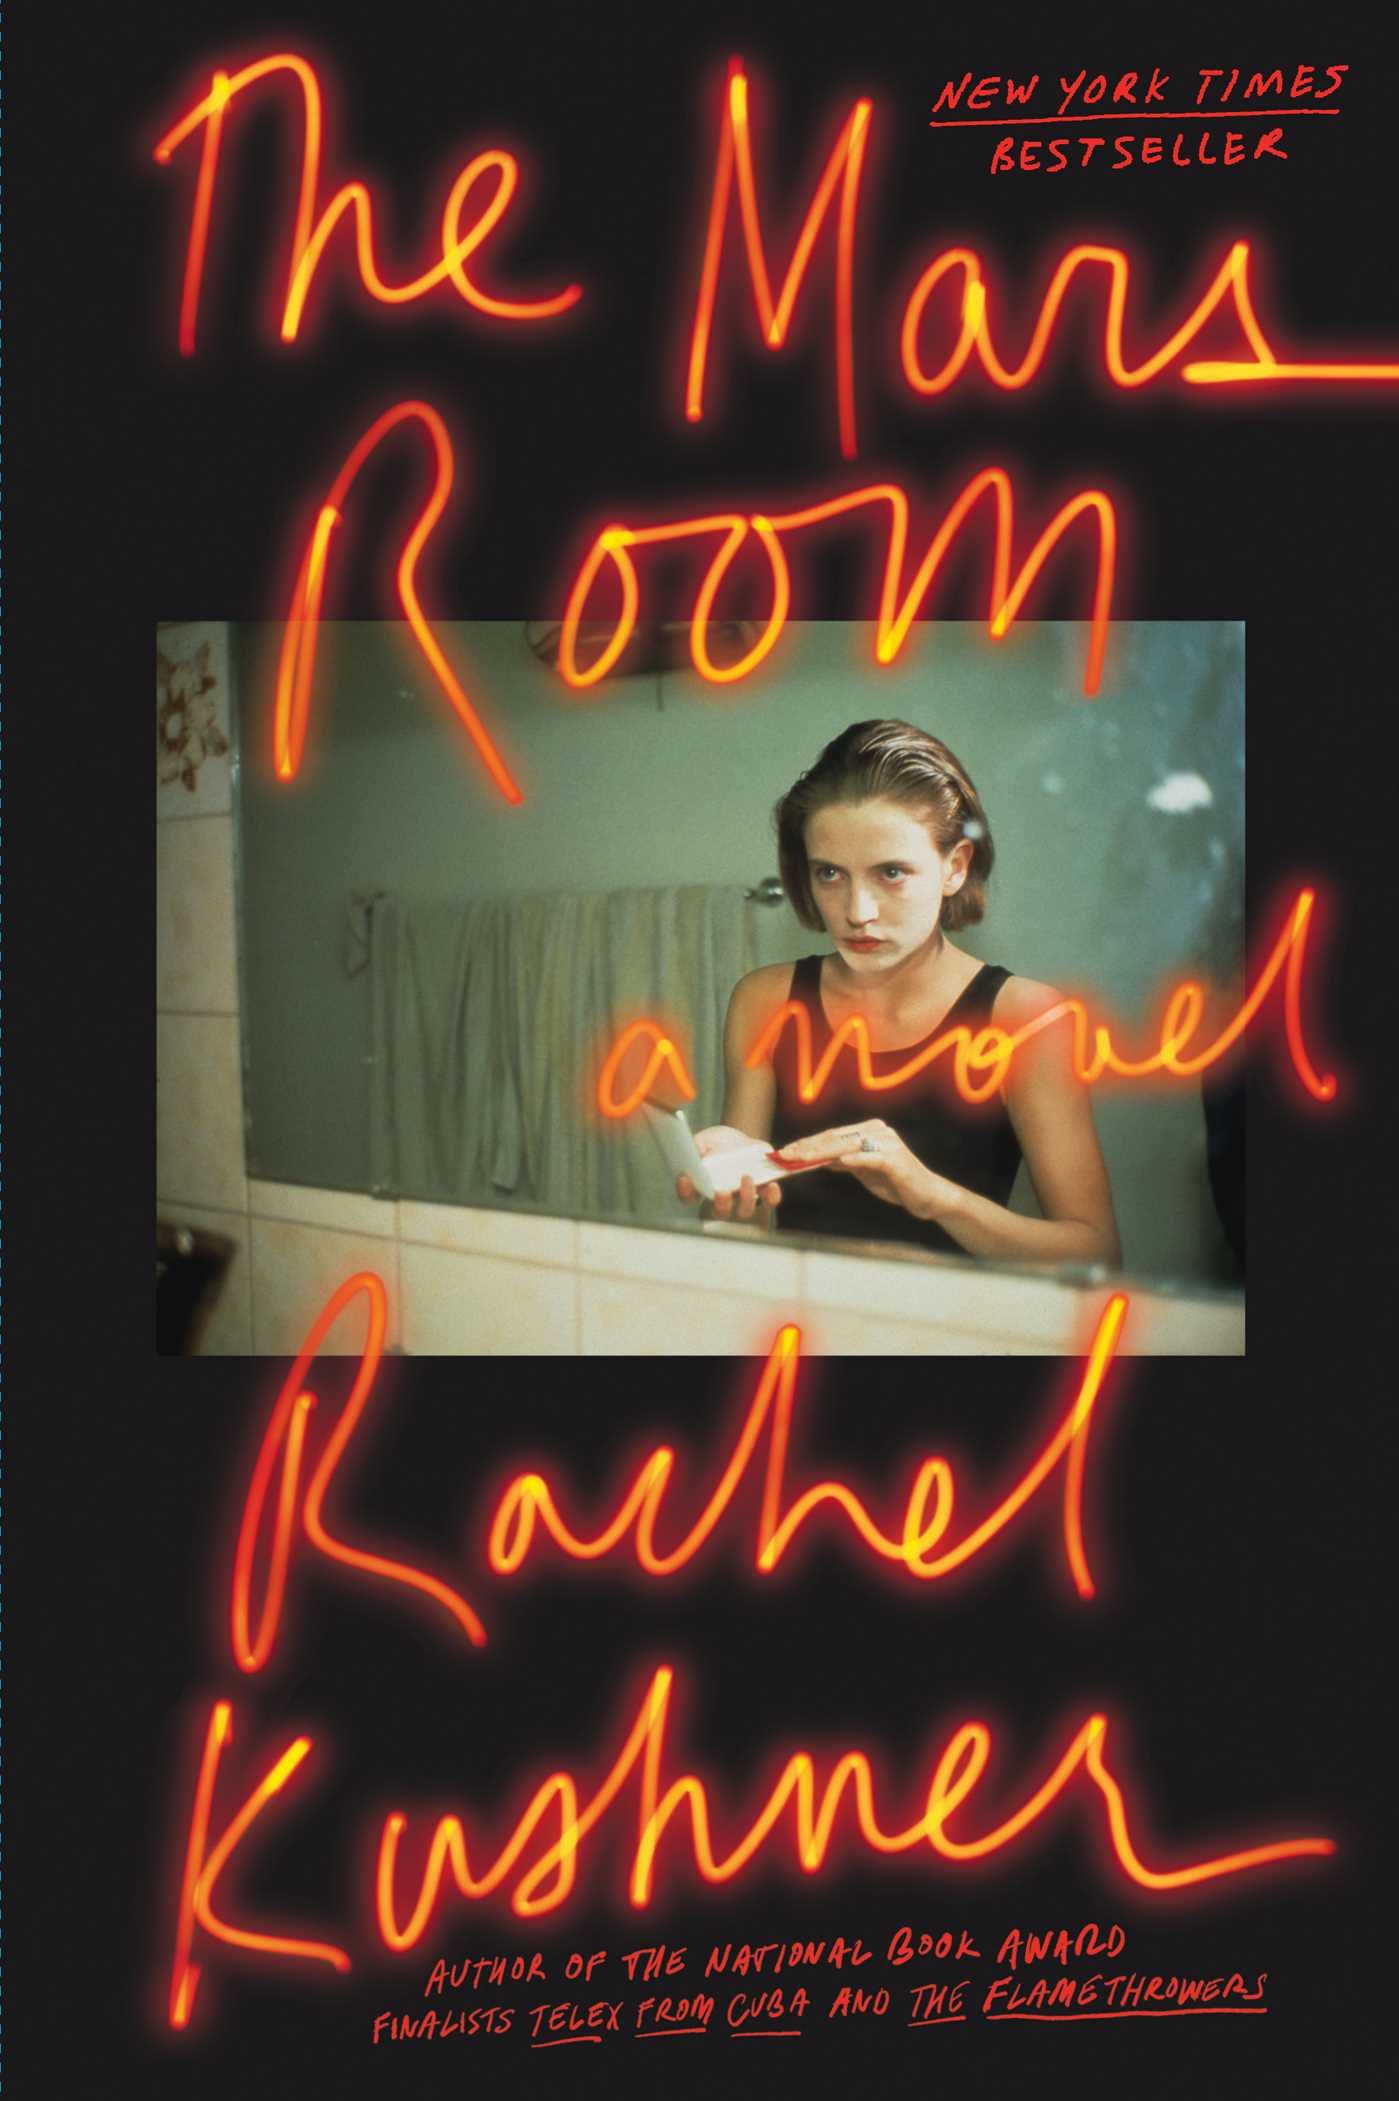 Rachel Kushner's book cover